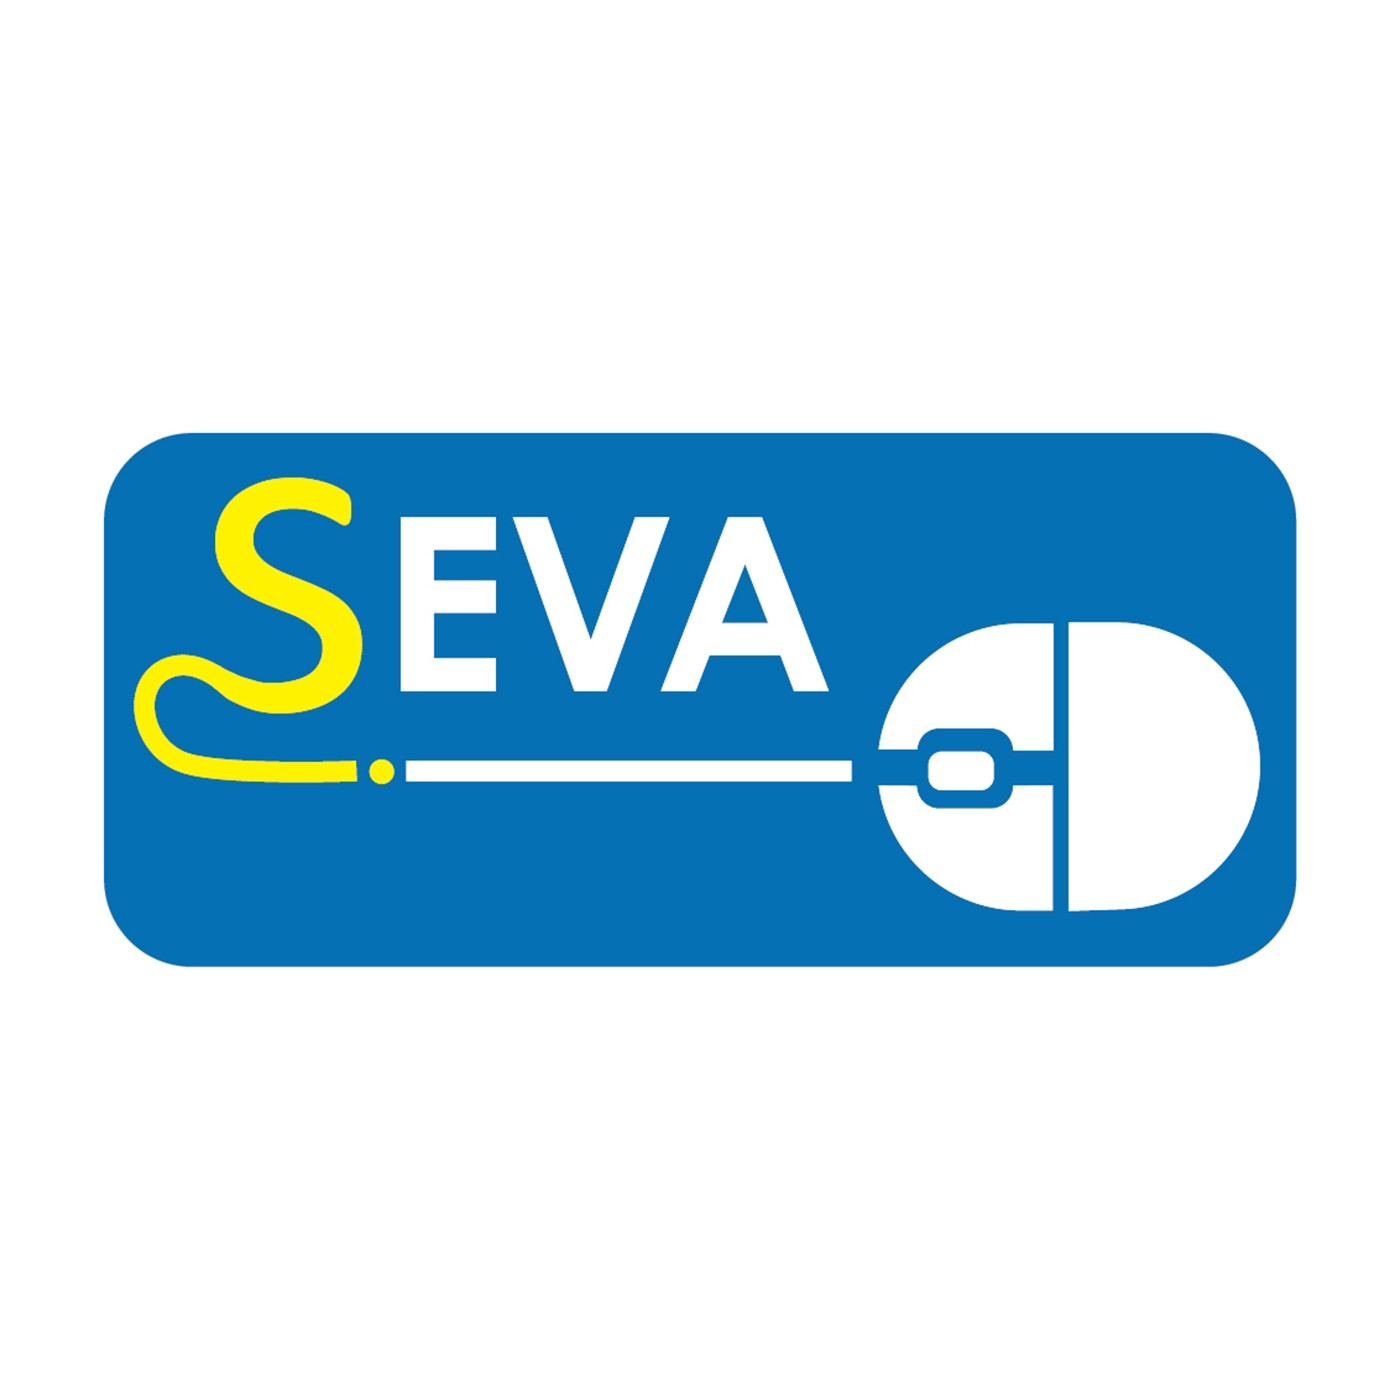 SEVA Radio promo - English